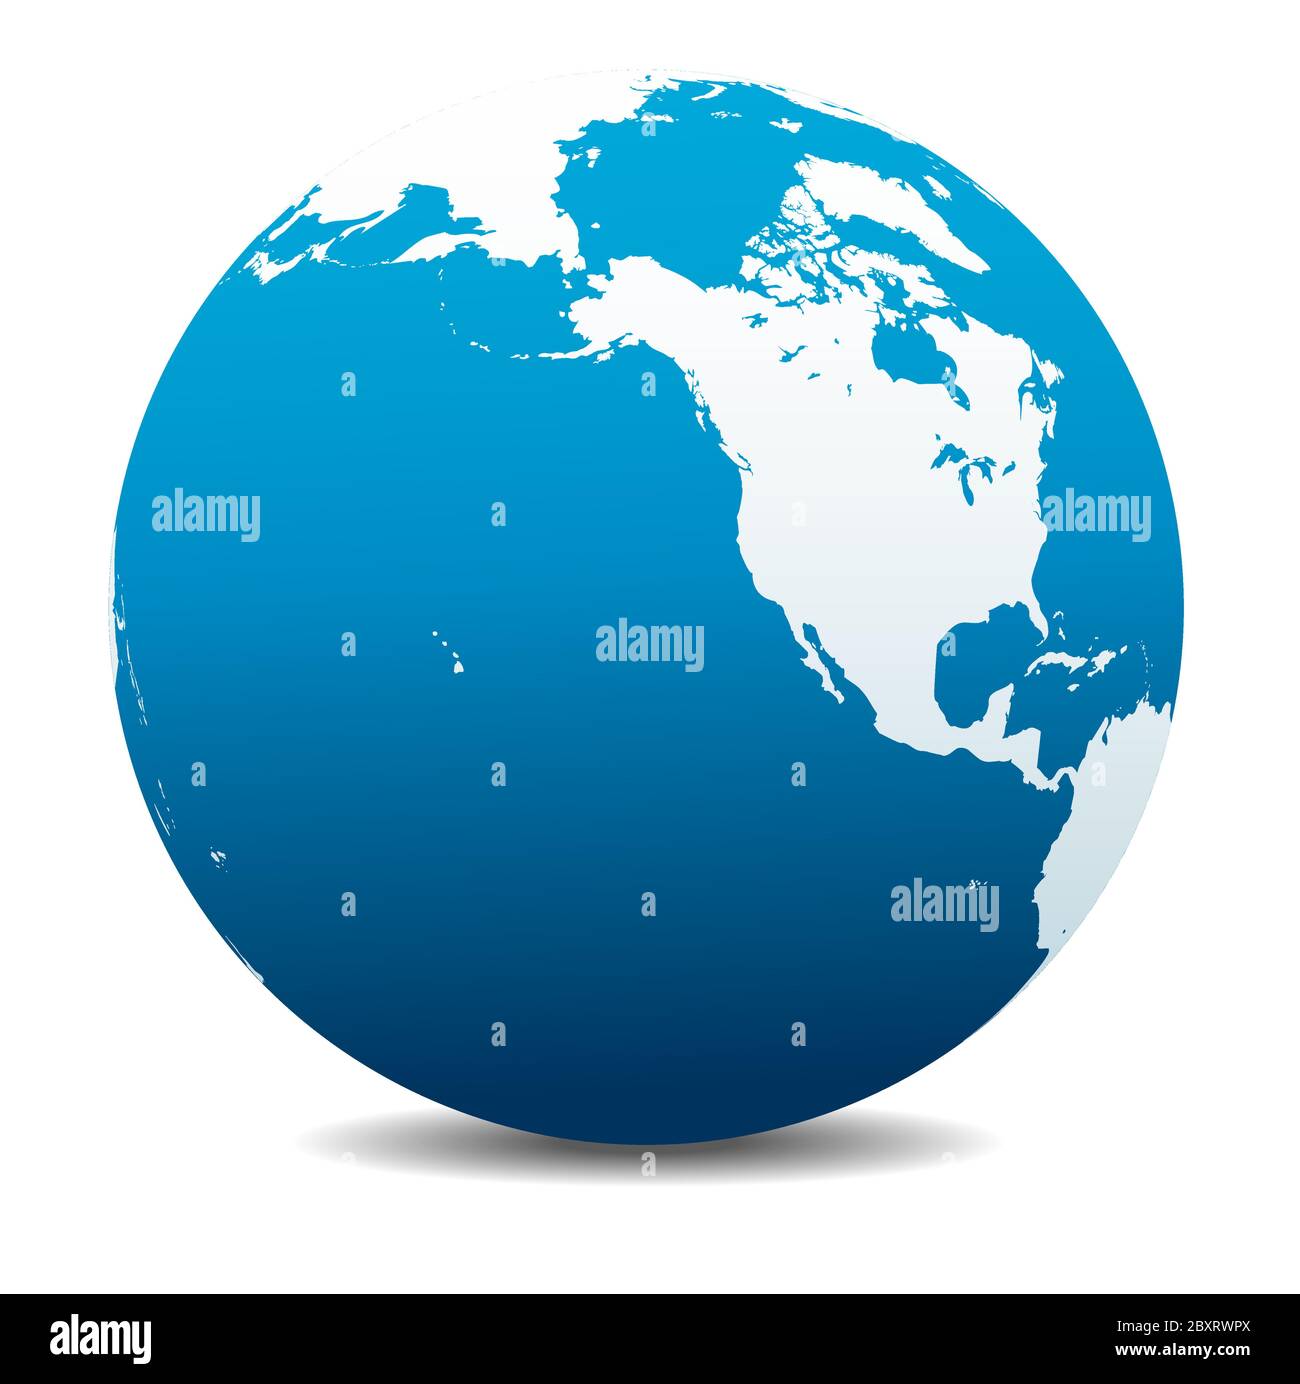 Nord America, Canada, Siberia e Hawaii. Icona Mappa vettoriale del globo mondiale, Terra. Tutti gli elementi si trovano su singoli livelli nel file vettoriale. Illustrazione Vettoriale